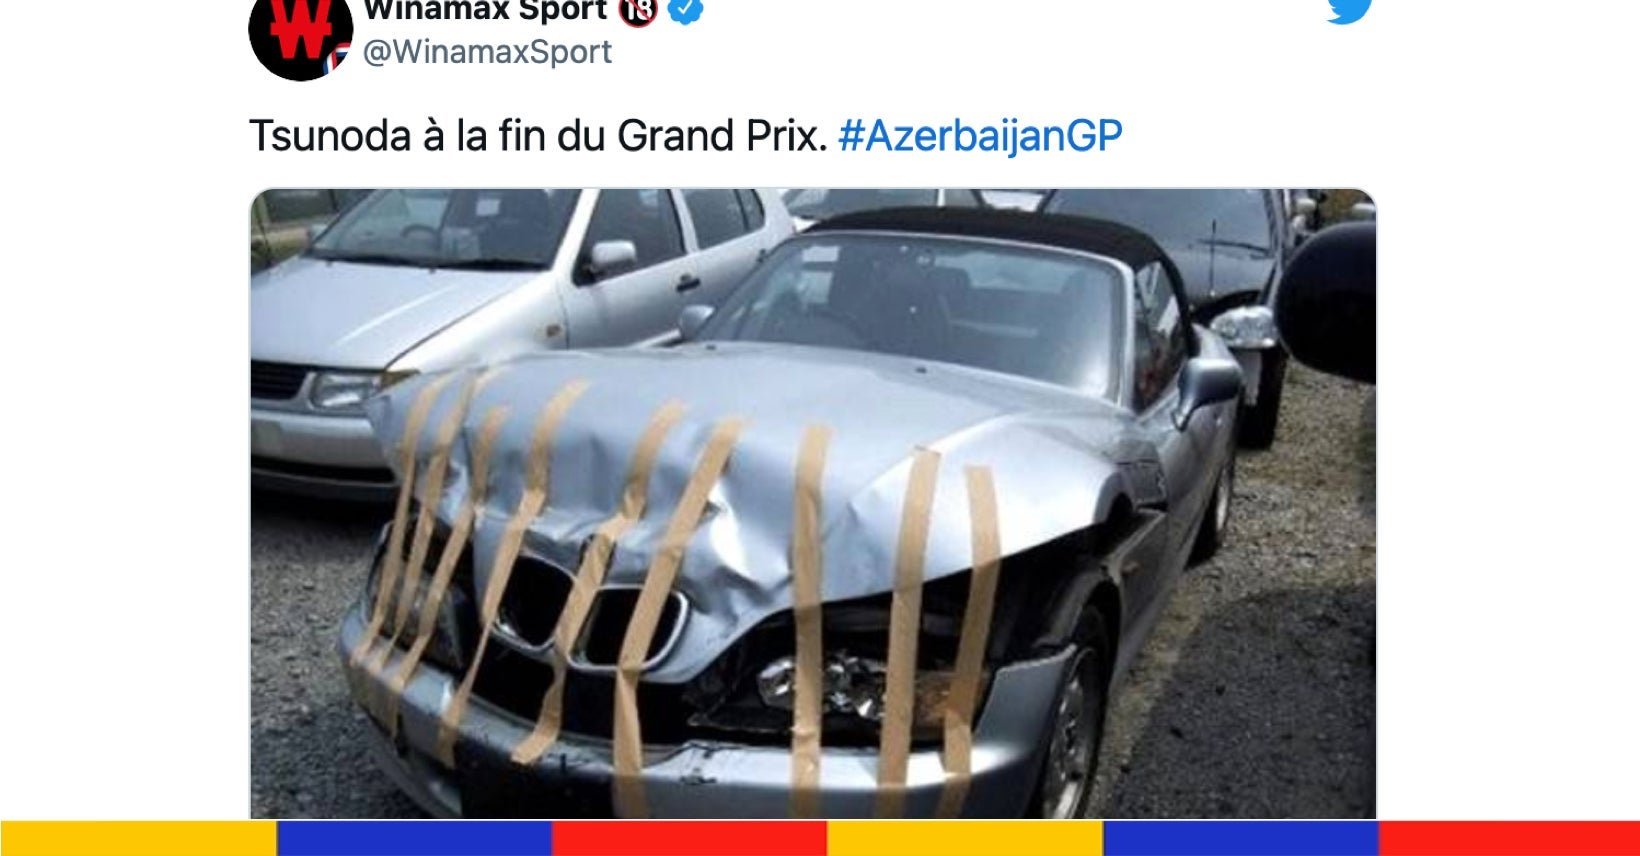 Max Verstappen remporte le Grand Prix de Formule 1 d’Azerbaïdjan : le grand n’importe quoi des réseaux sociaux